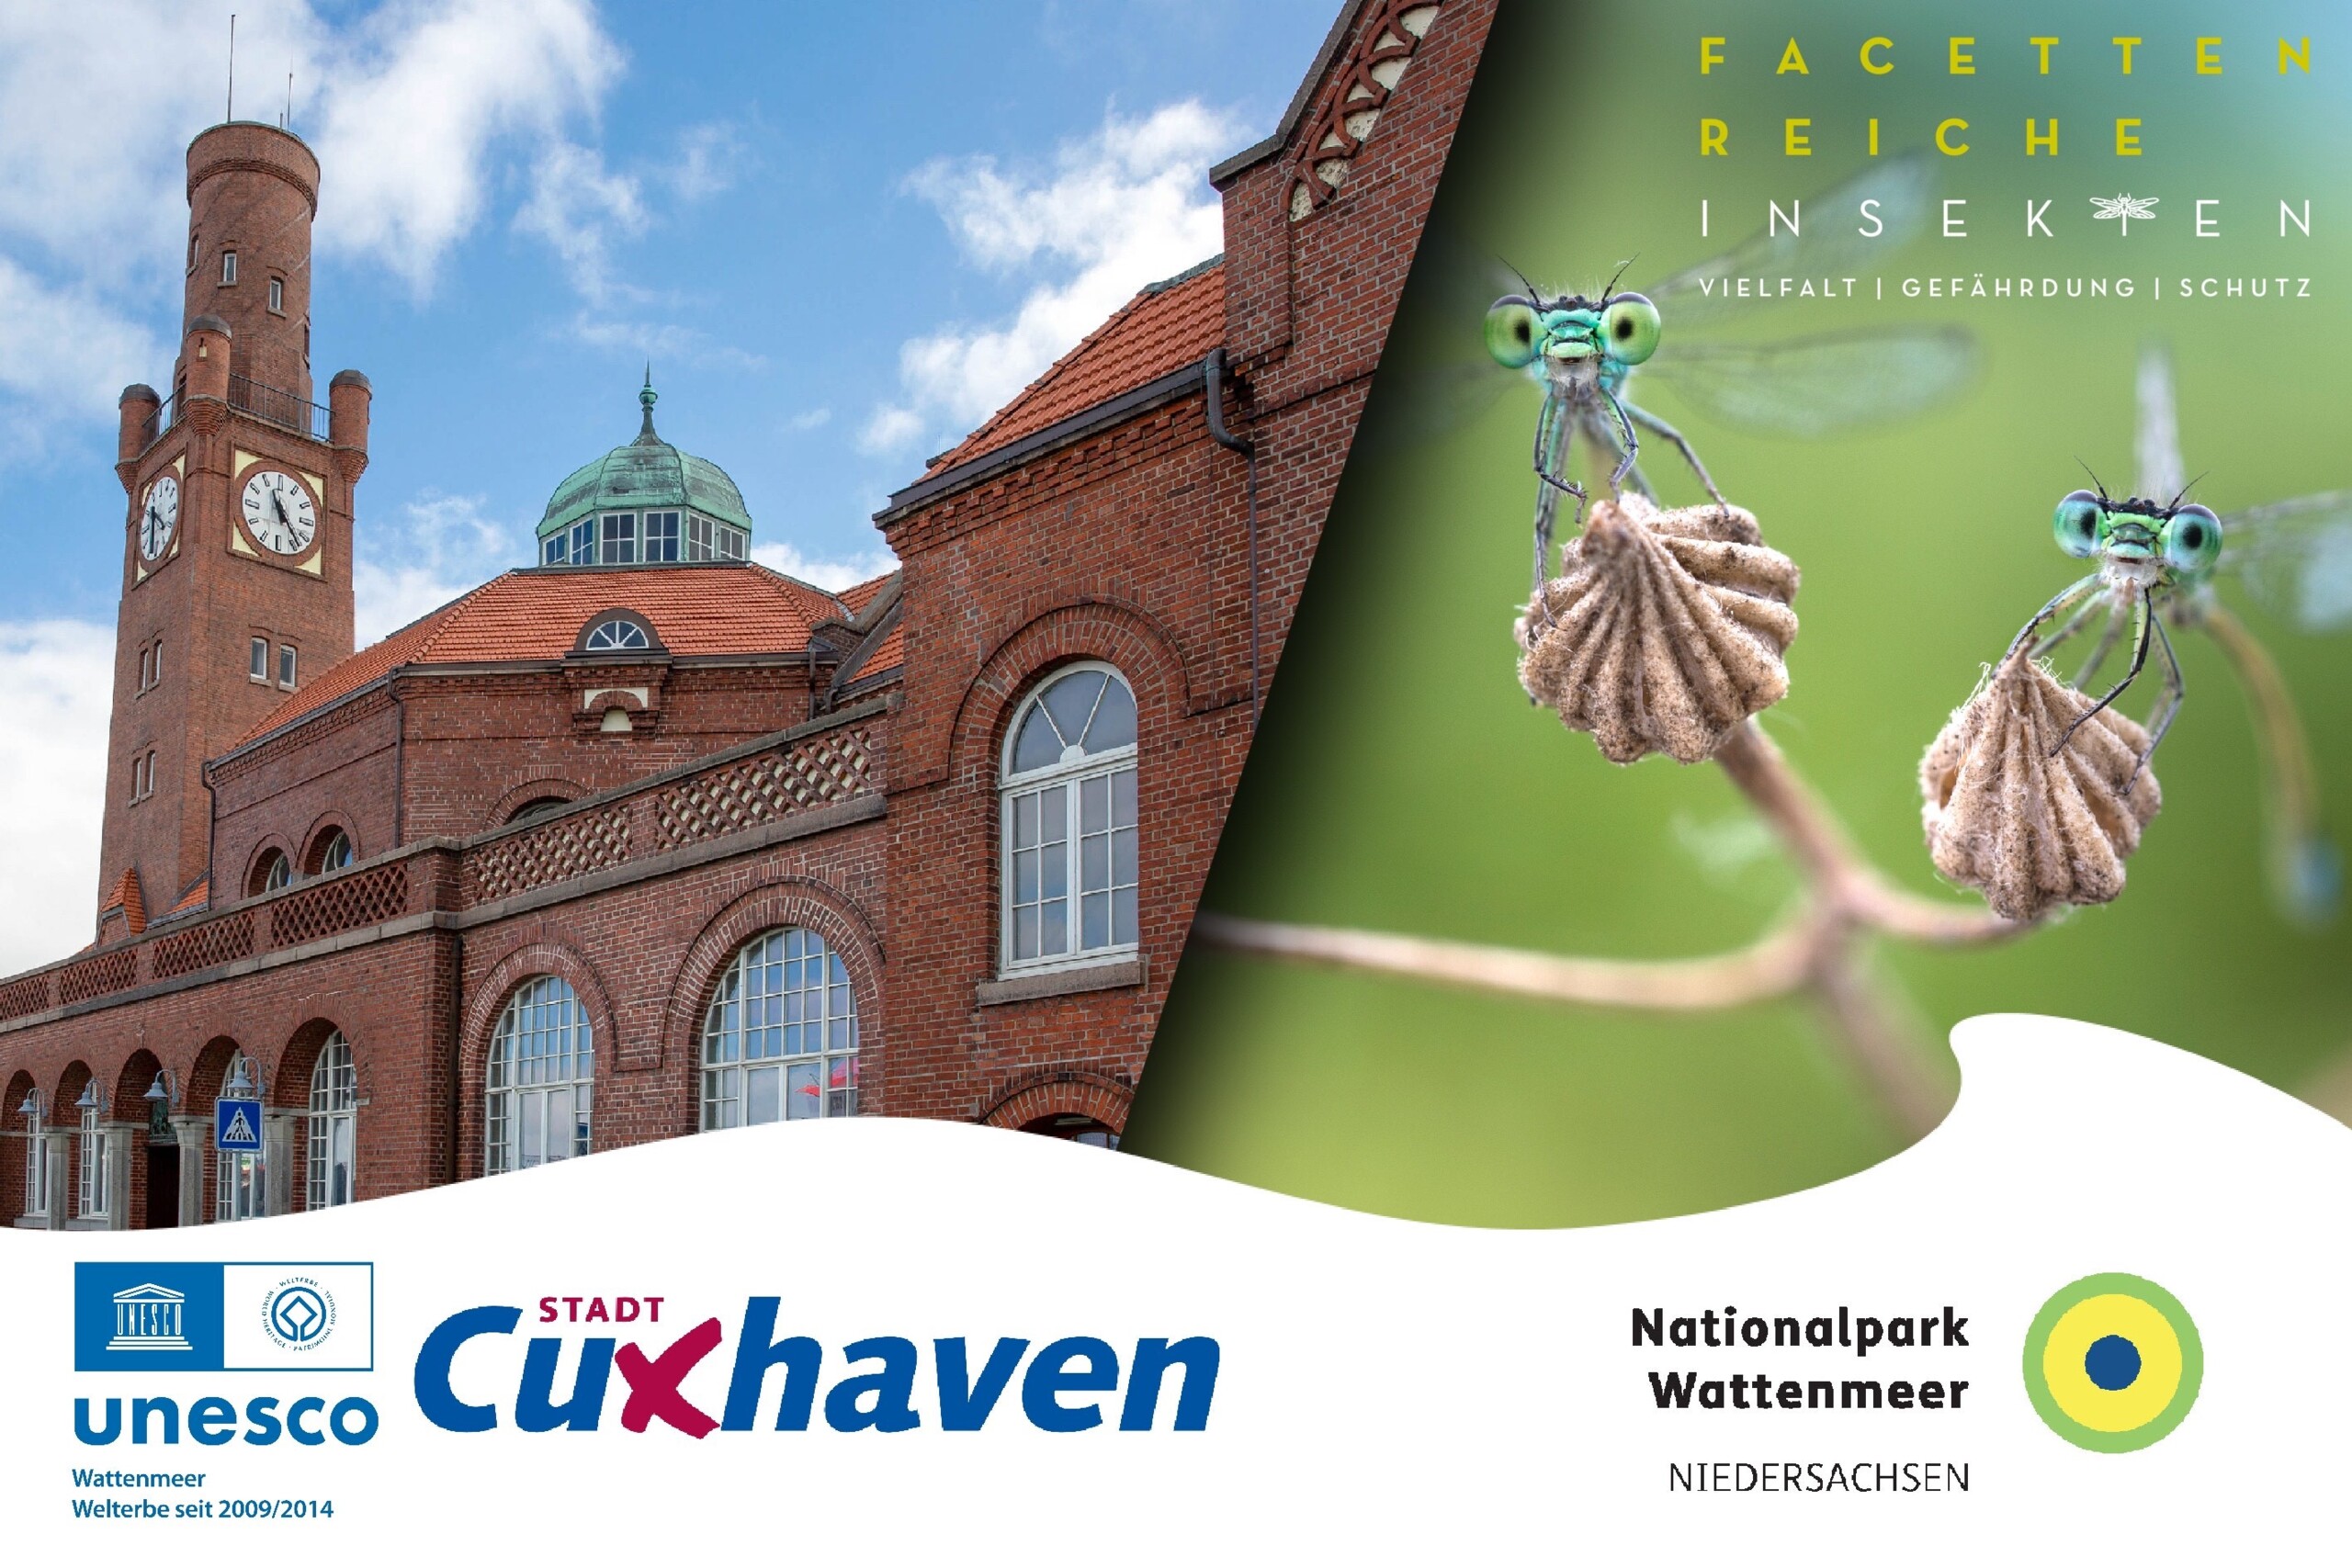 Foto zeigt Hinweis auf die Ausstellung Facettenreiche Insekten in den Happag-Hallen Cuxhaven